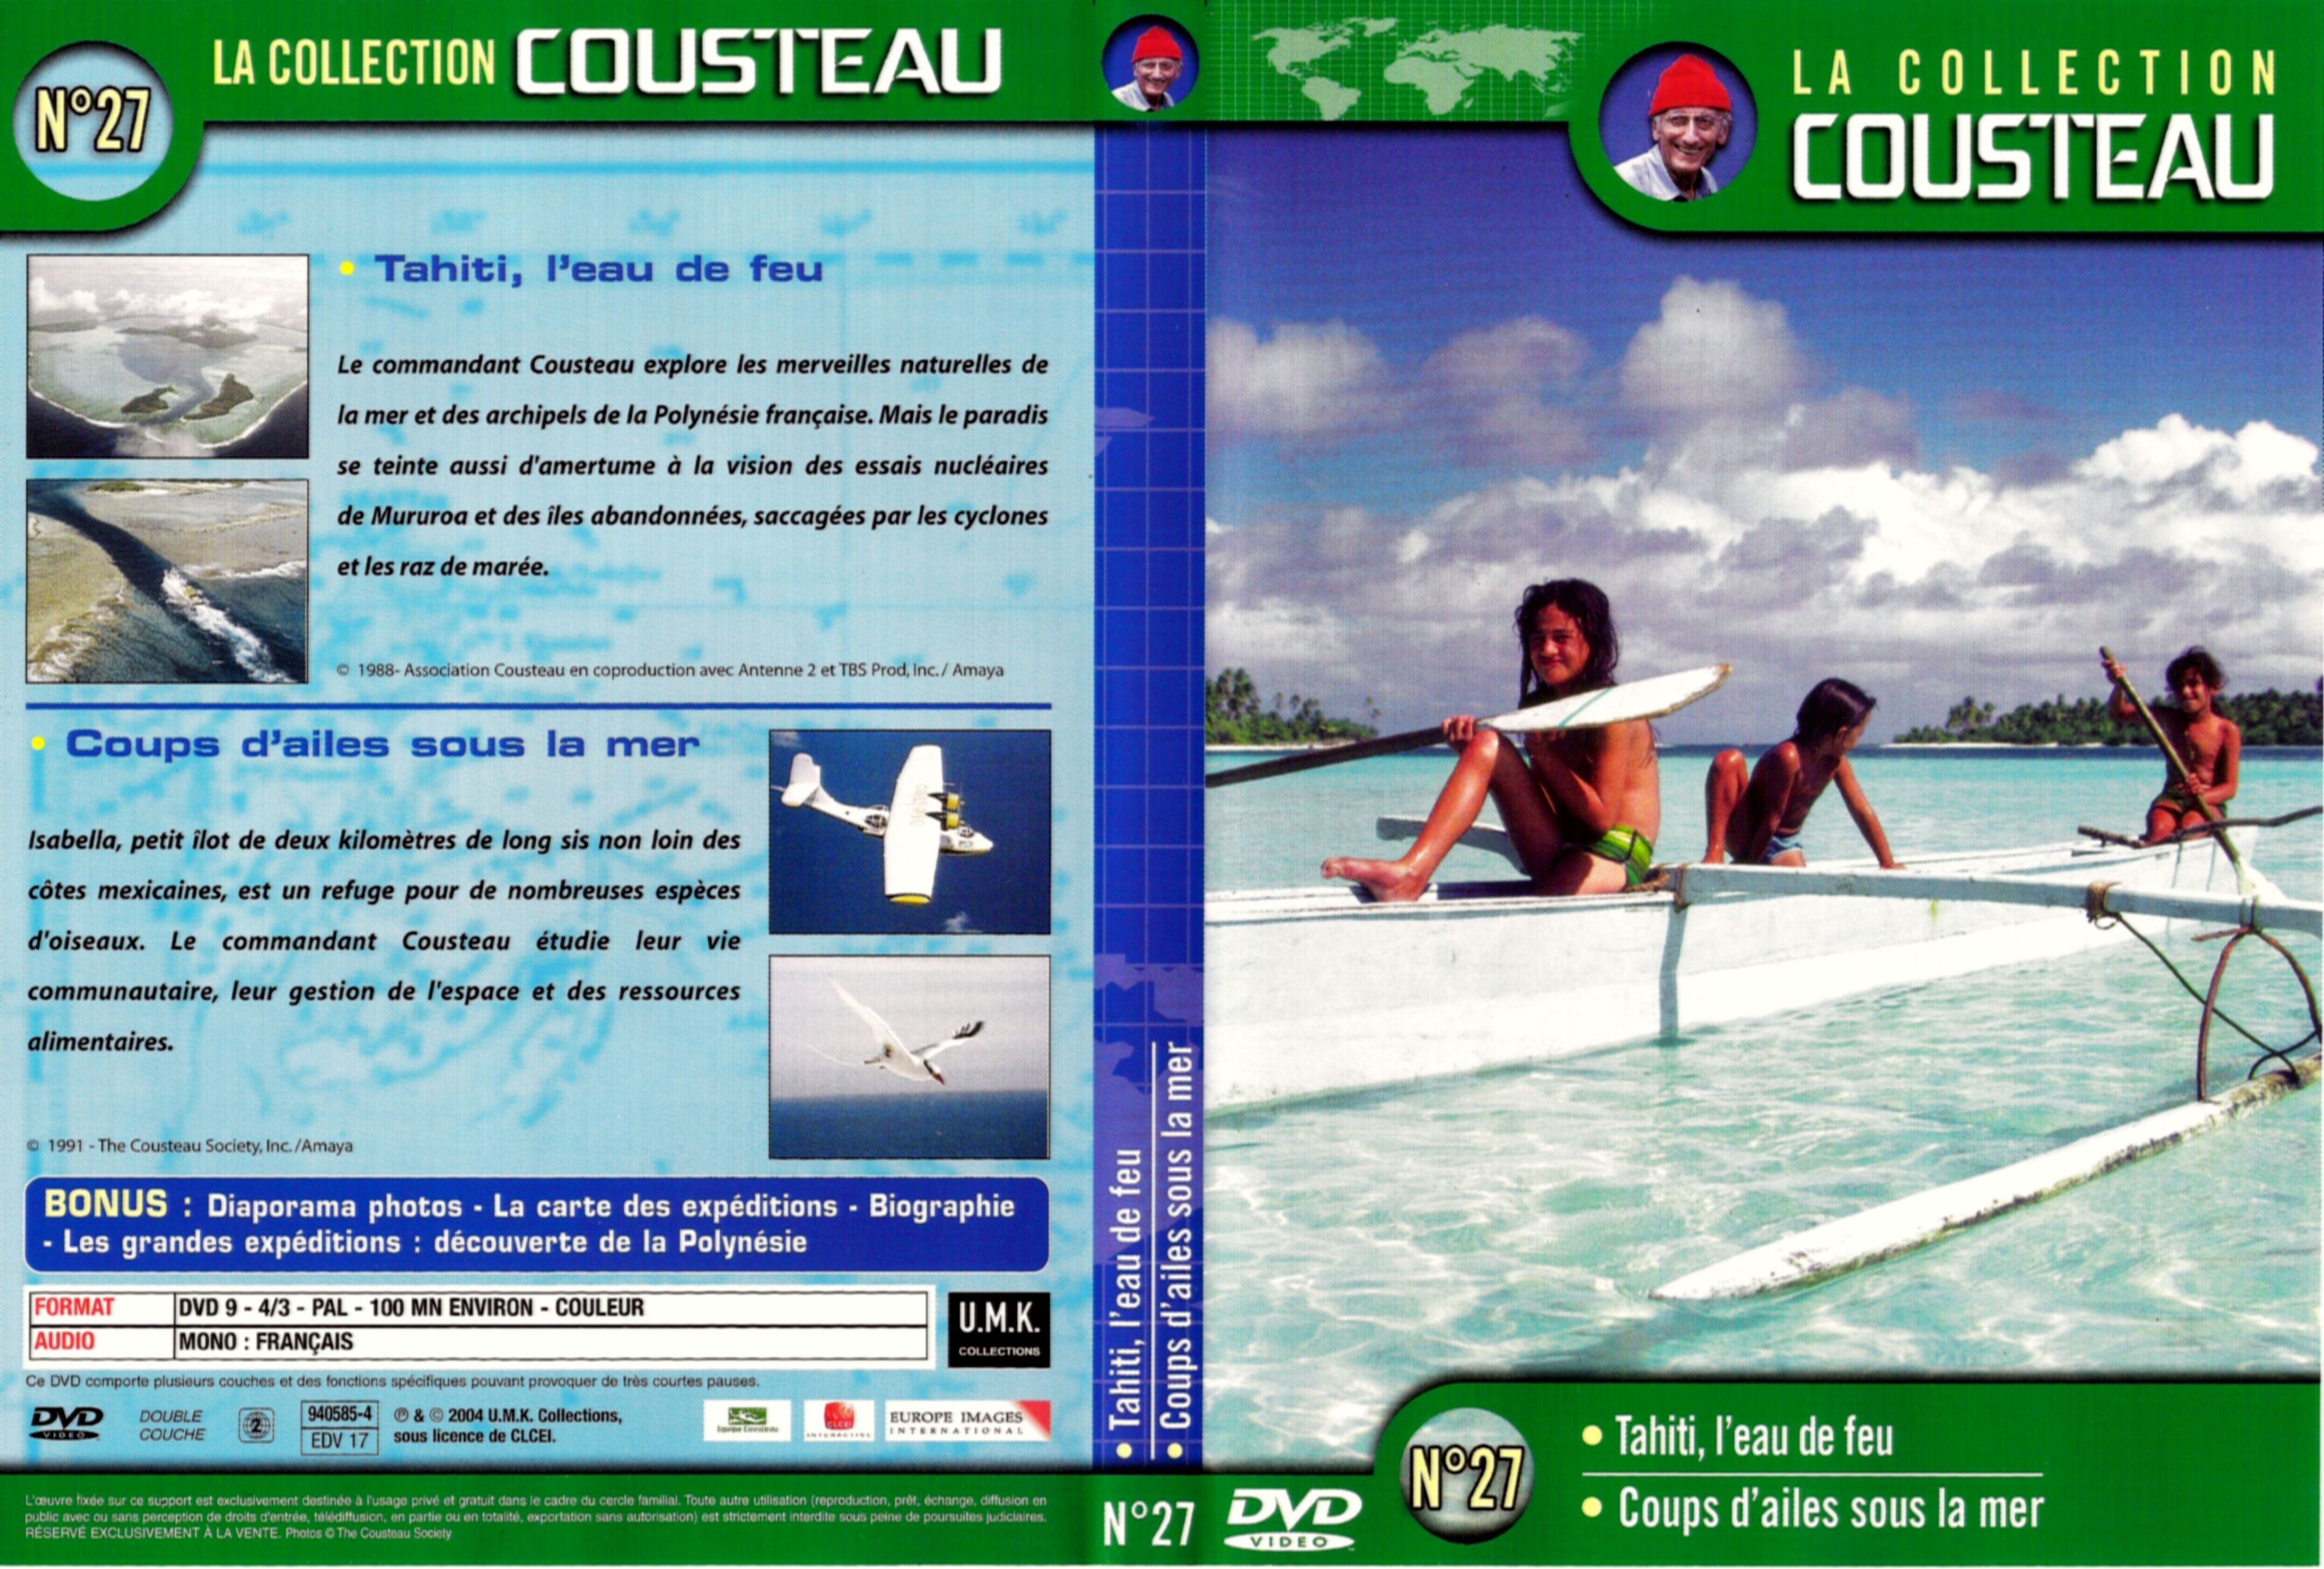 Jaquette DVD Cousteau Collection vol 27